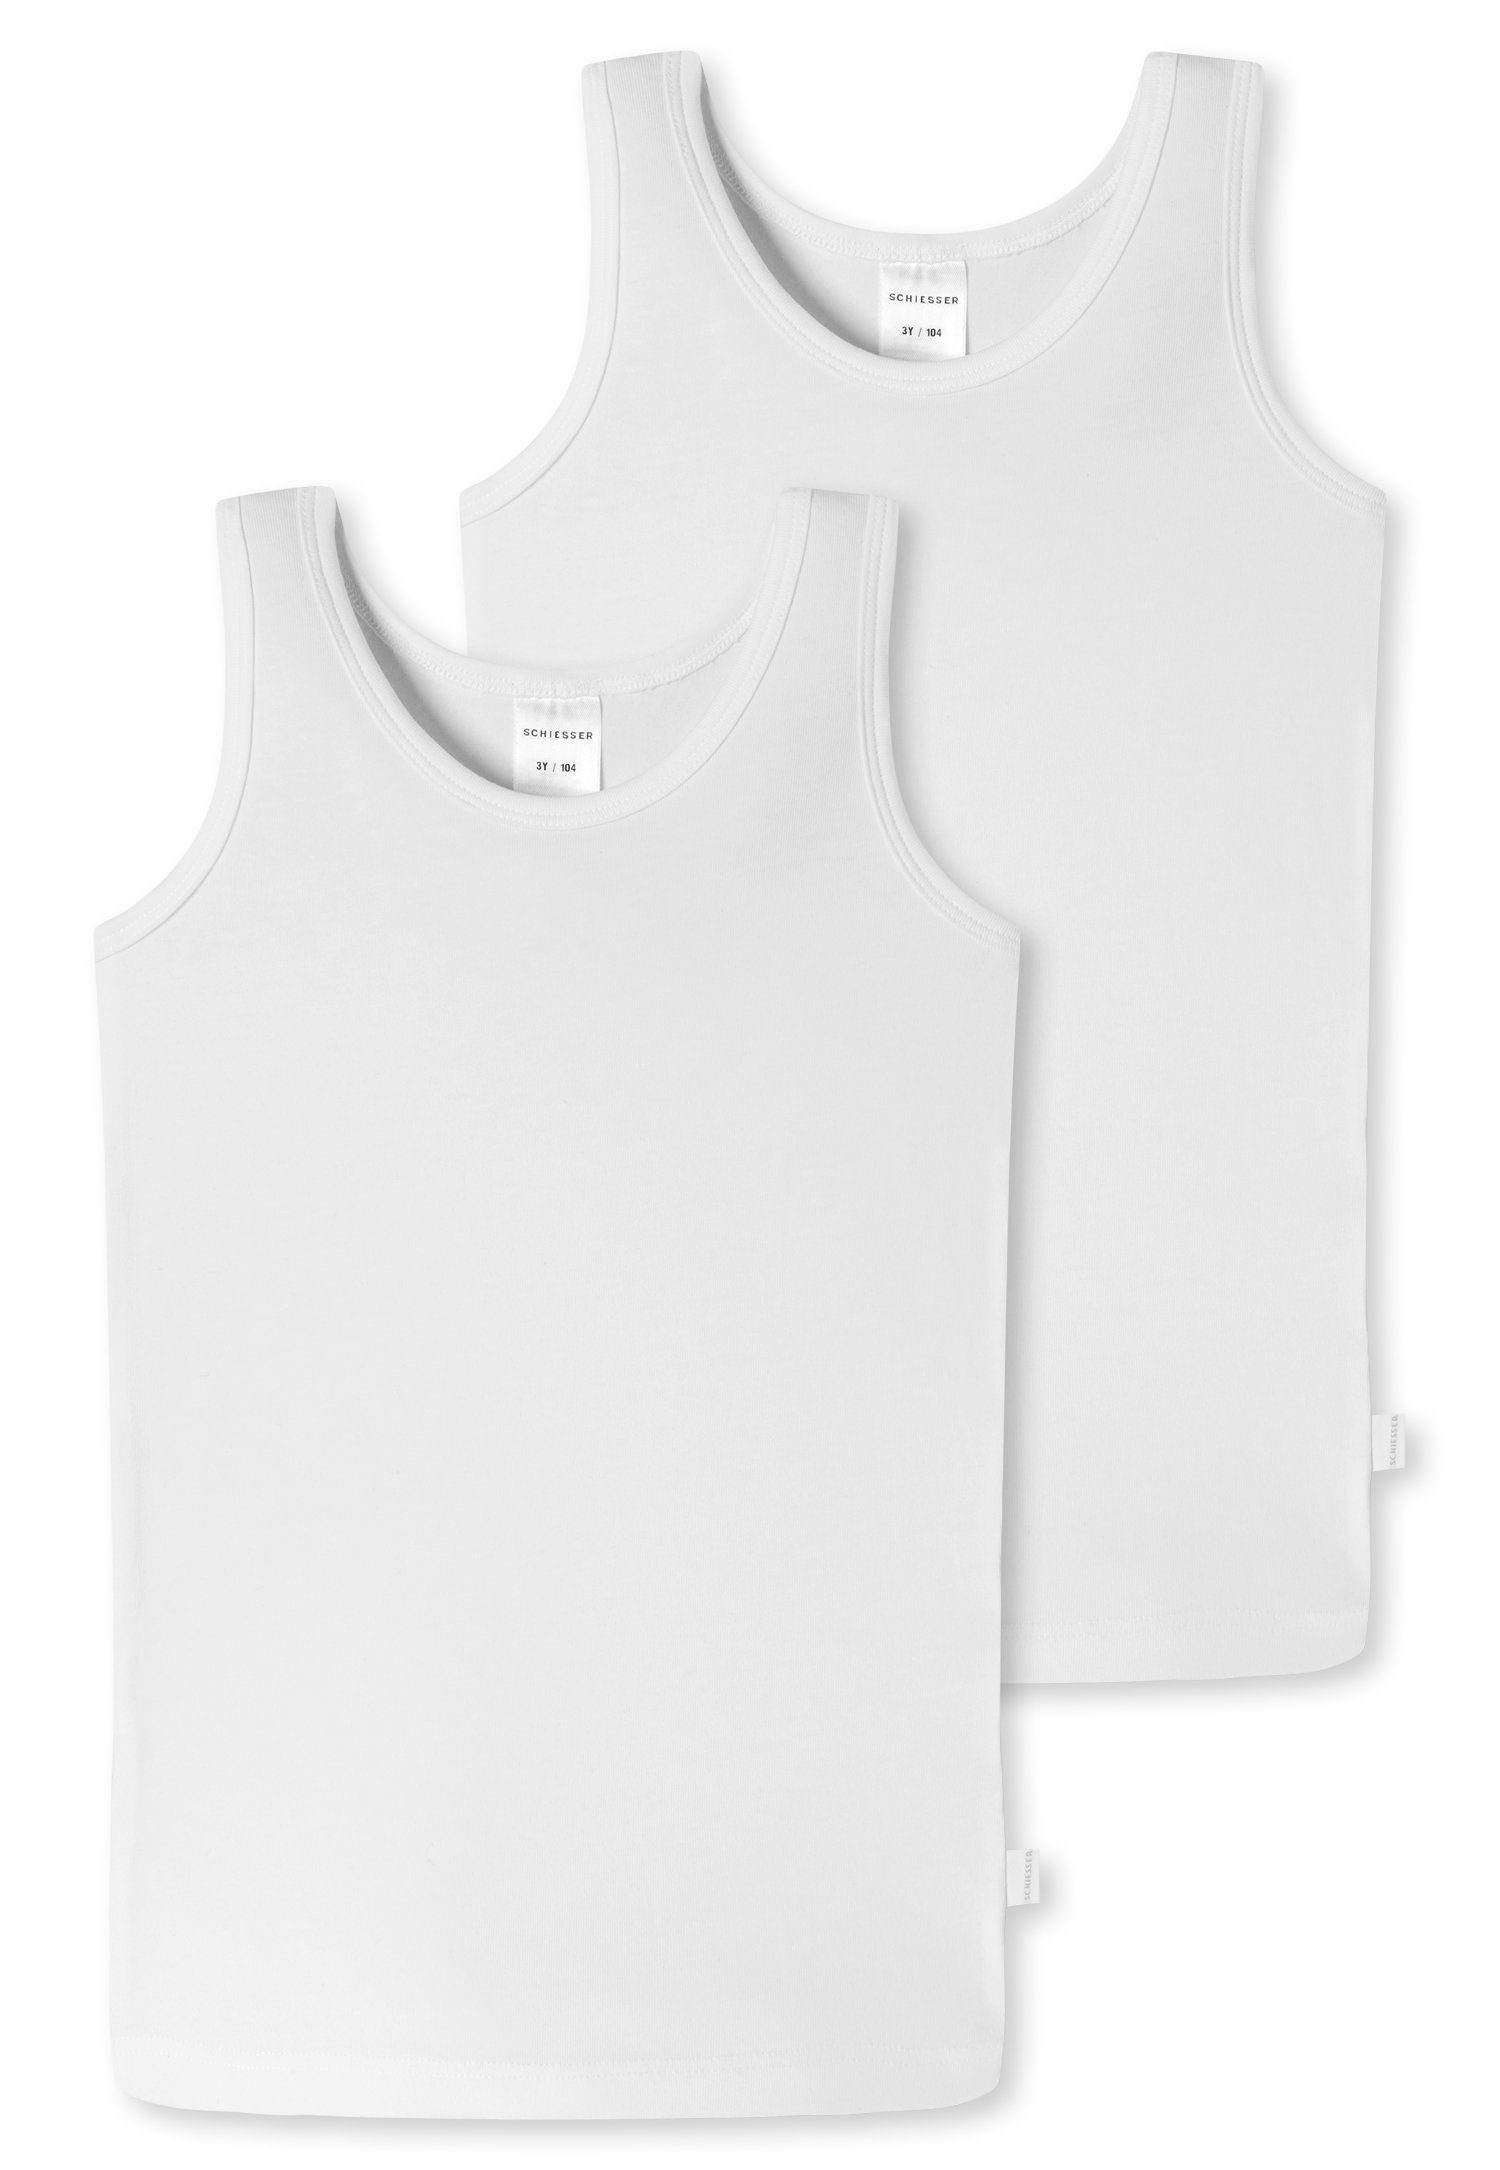 Schiesser Unterhemd (2er-Pack) mit Markenlabel weiß | Unterhemden